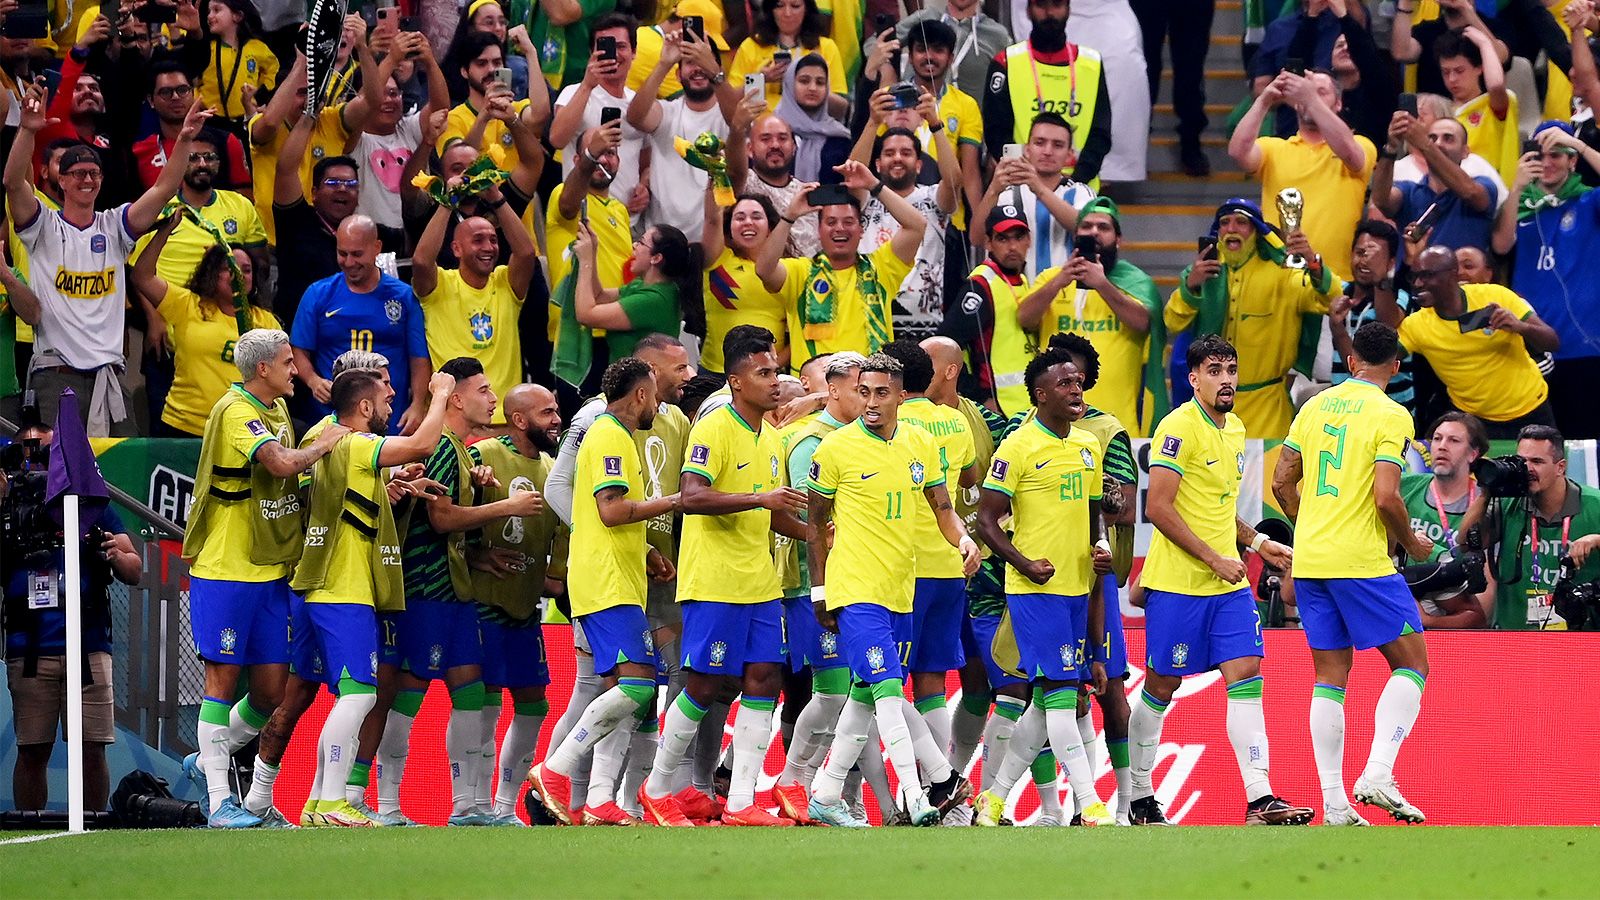 Бразилия сыграла вничью с США в рамках товарищеской встречи